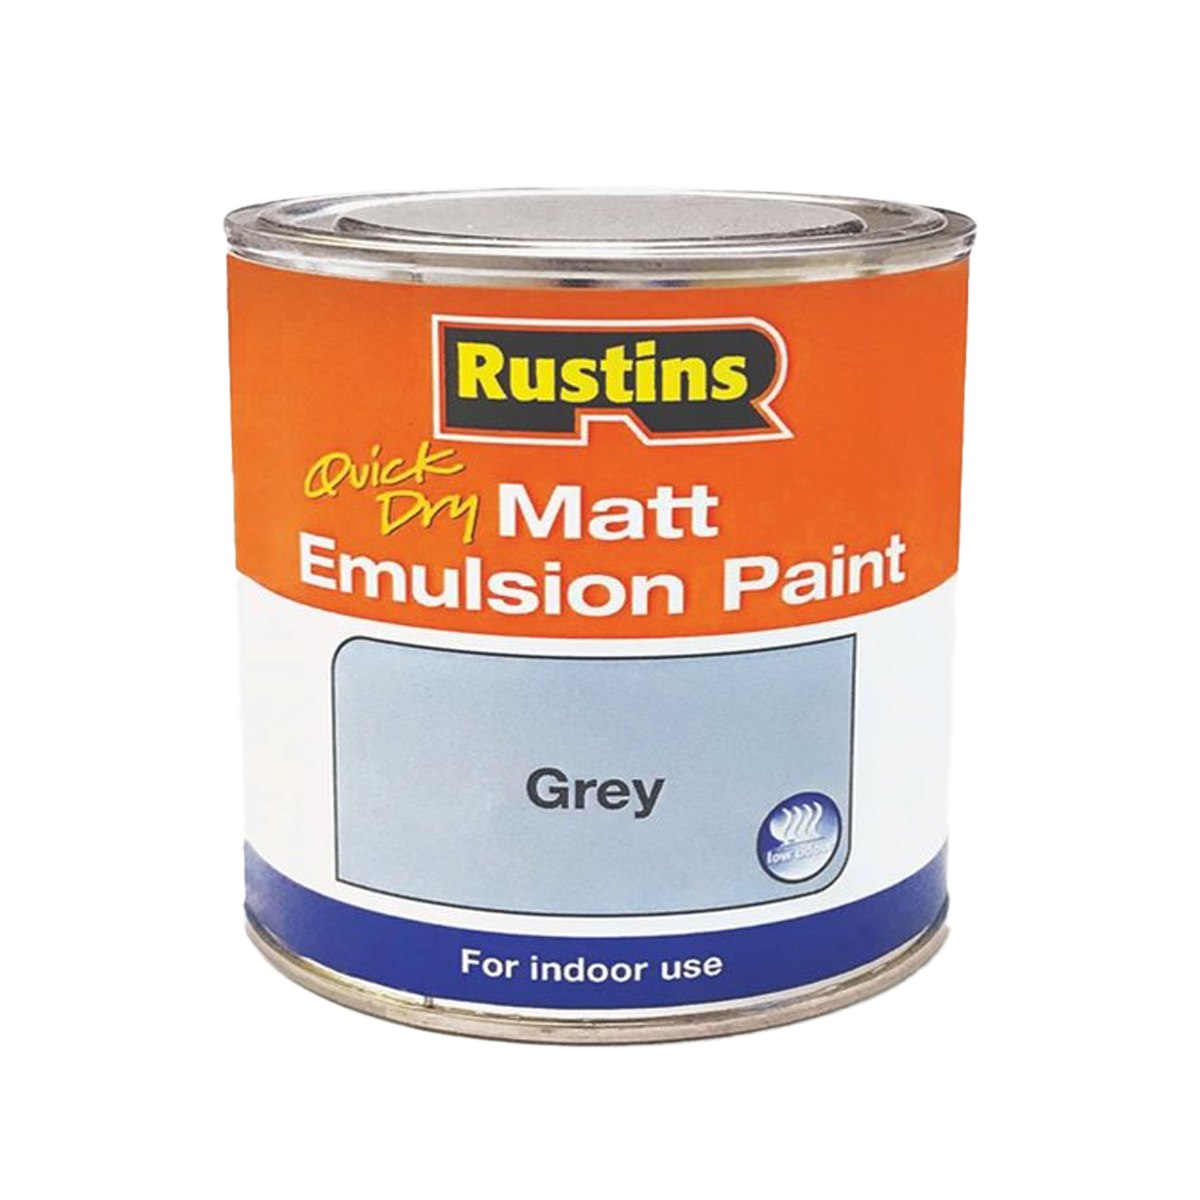 Rustins Quick Dry Matt Emulsion Paint Grey